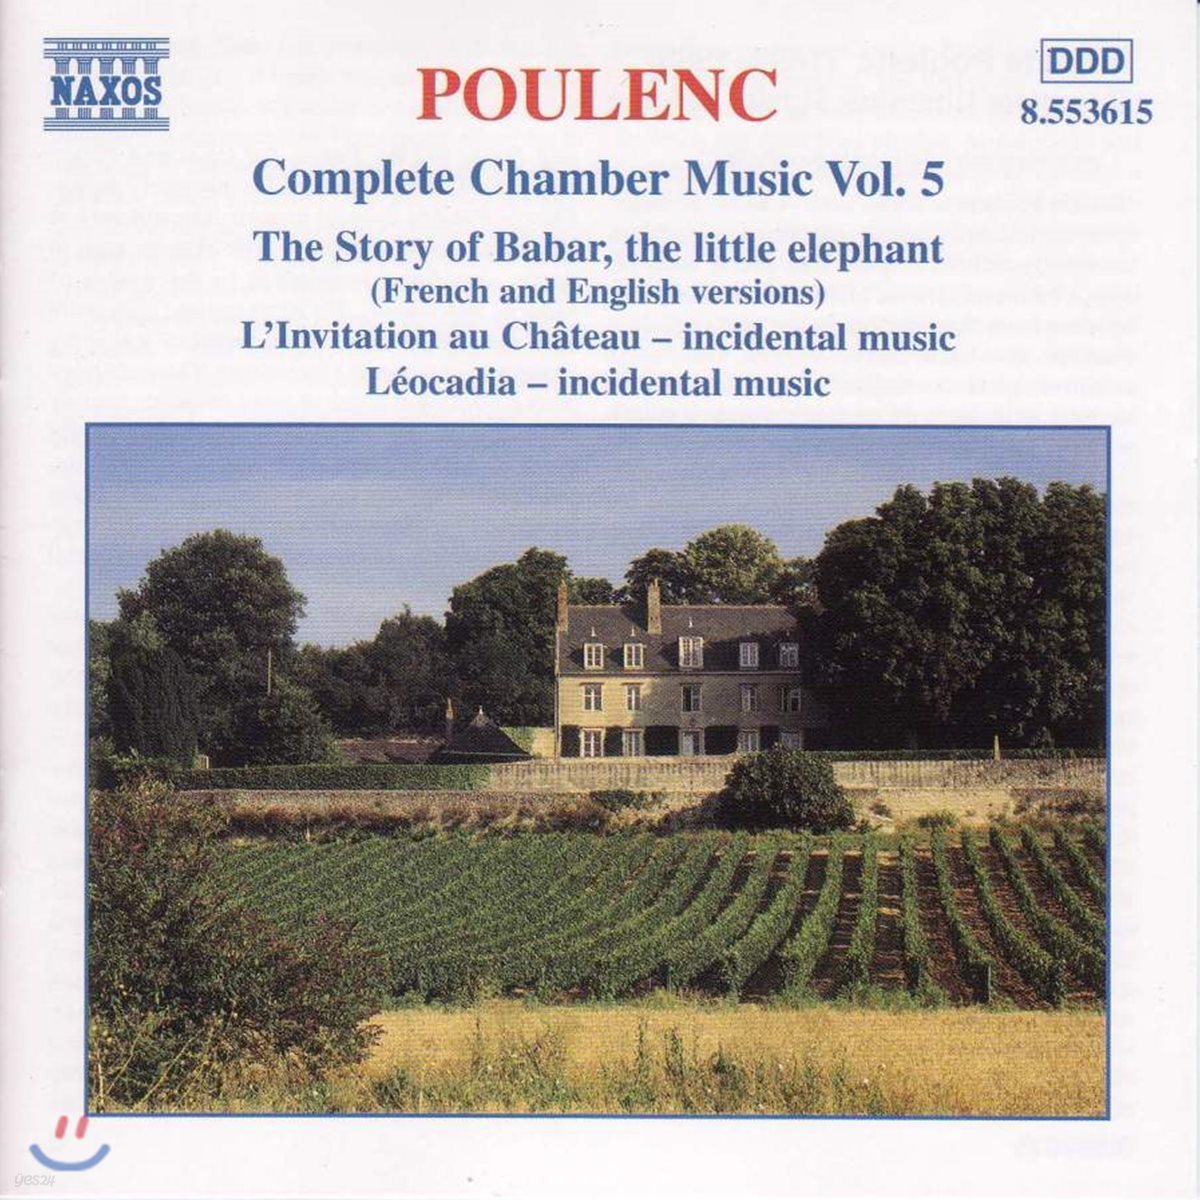 풀랑크 : 실내악 작품 전곡 5집 (Poulenc: Complete Chamber Music, Vol. 5)